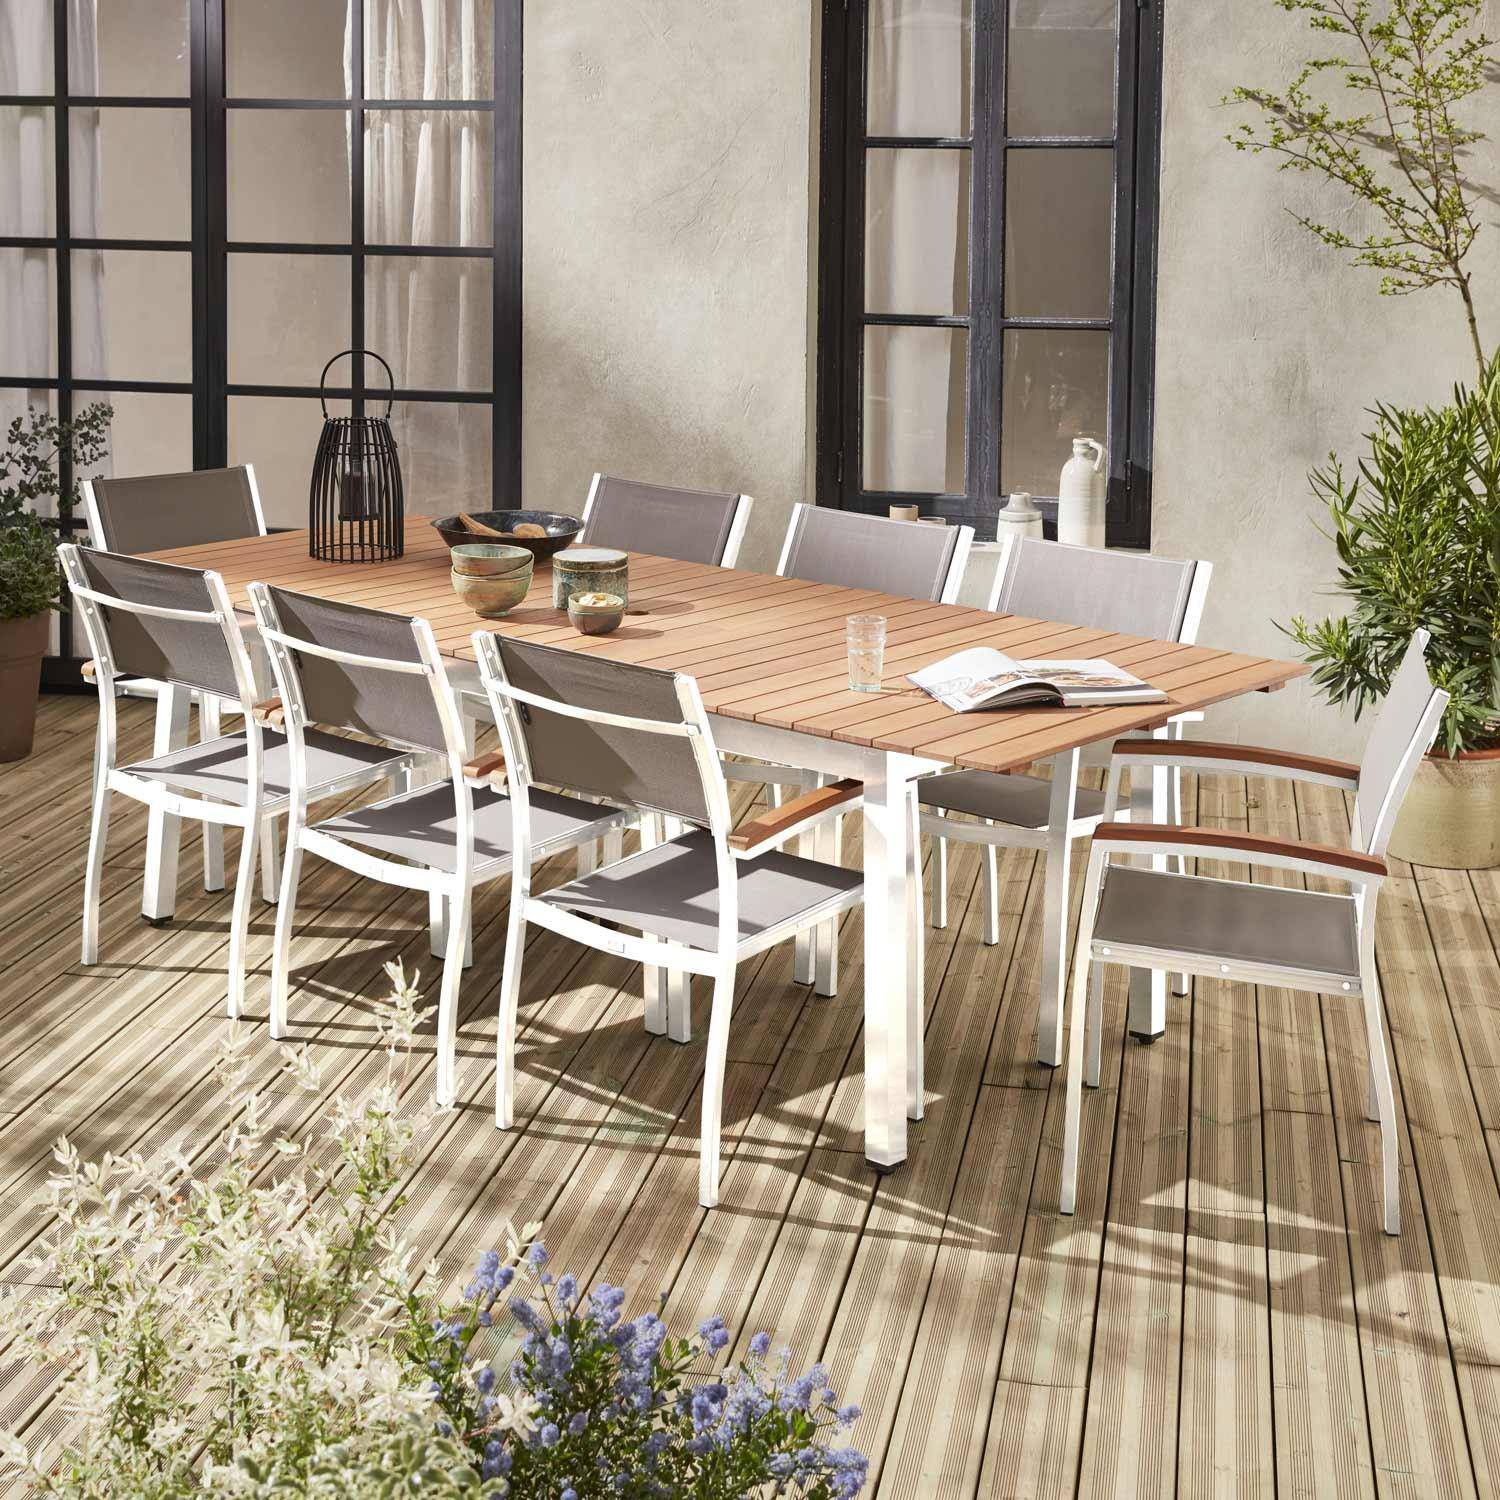 Ausziehbare Gartengarnitur aus Holz und Aluminium - Sevilla - Großer Tisch 200/250 cm mit Verlängerung, 8 Sessel, aus Aluminium, geöltem FSC-Eukalyptusholz und taupegrauem Textilene Photo1